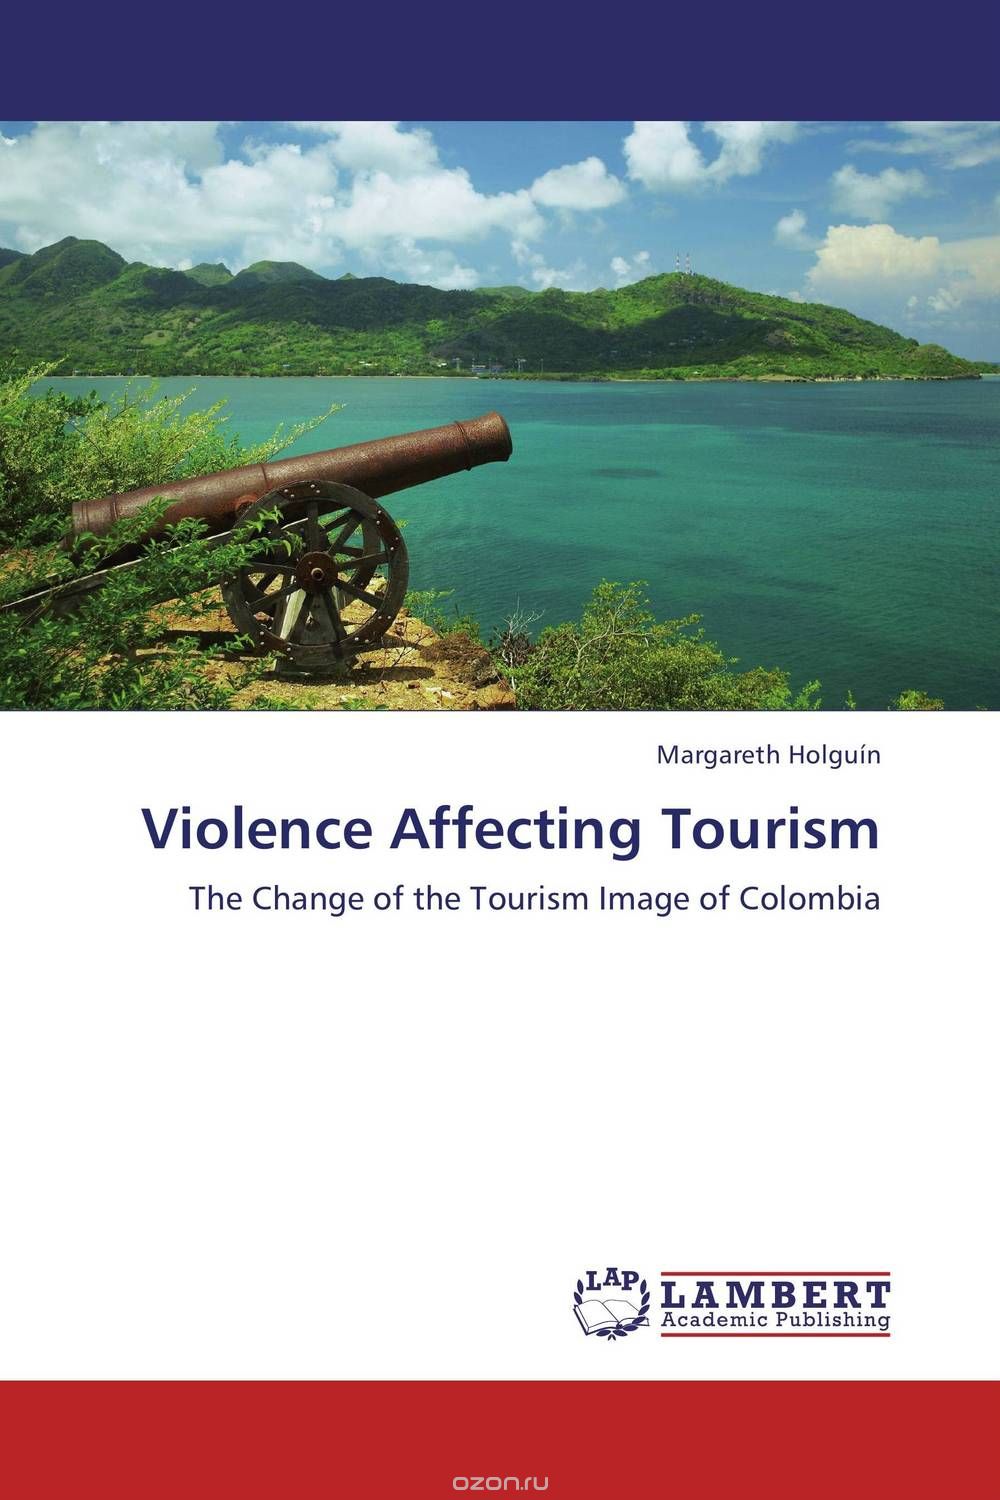 Скачать книгу "Violence Affecting Tourism"